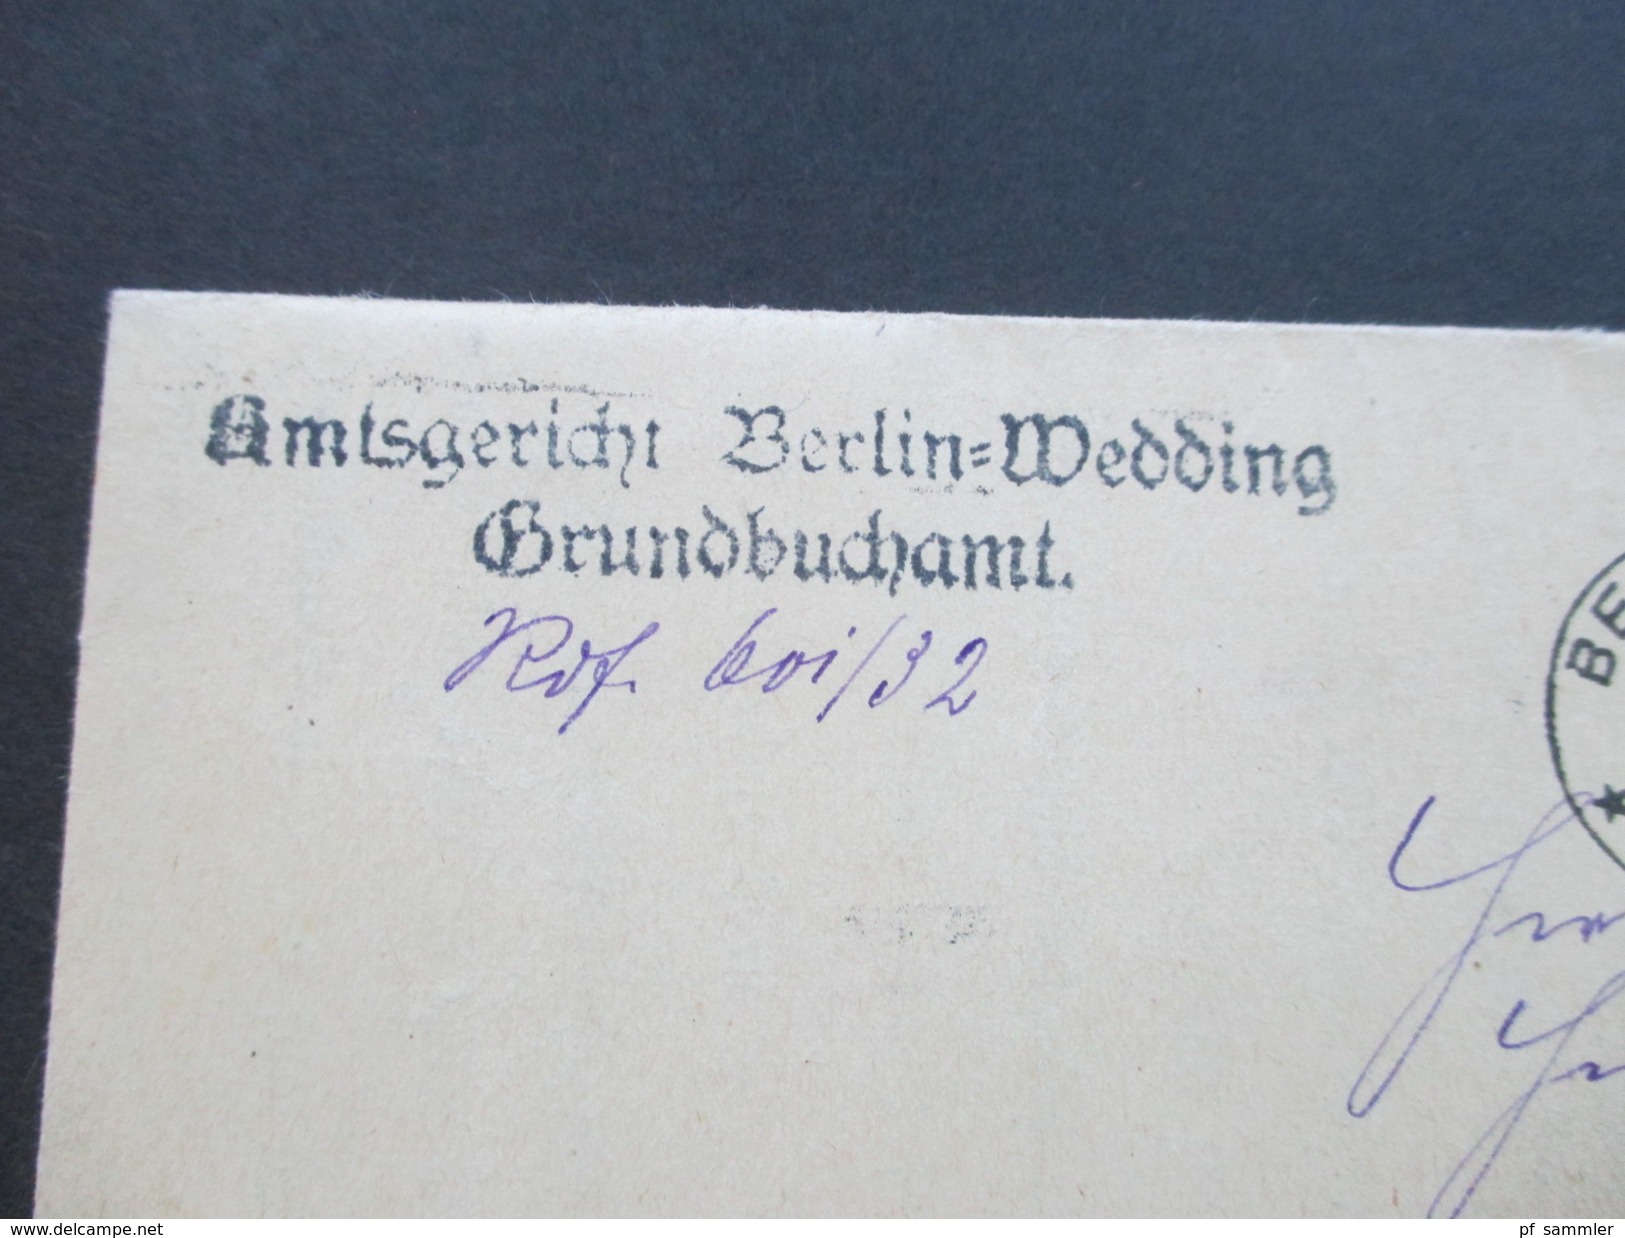 Deutsches Reich 1927 Dienstpost Nr. 105 / 106 MiF Ortsbrief Berlin. Amtsgericht Berlin-Wedding Grundbuchamt.Papiersiegel - Dienstmarken